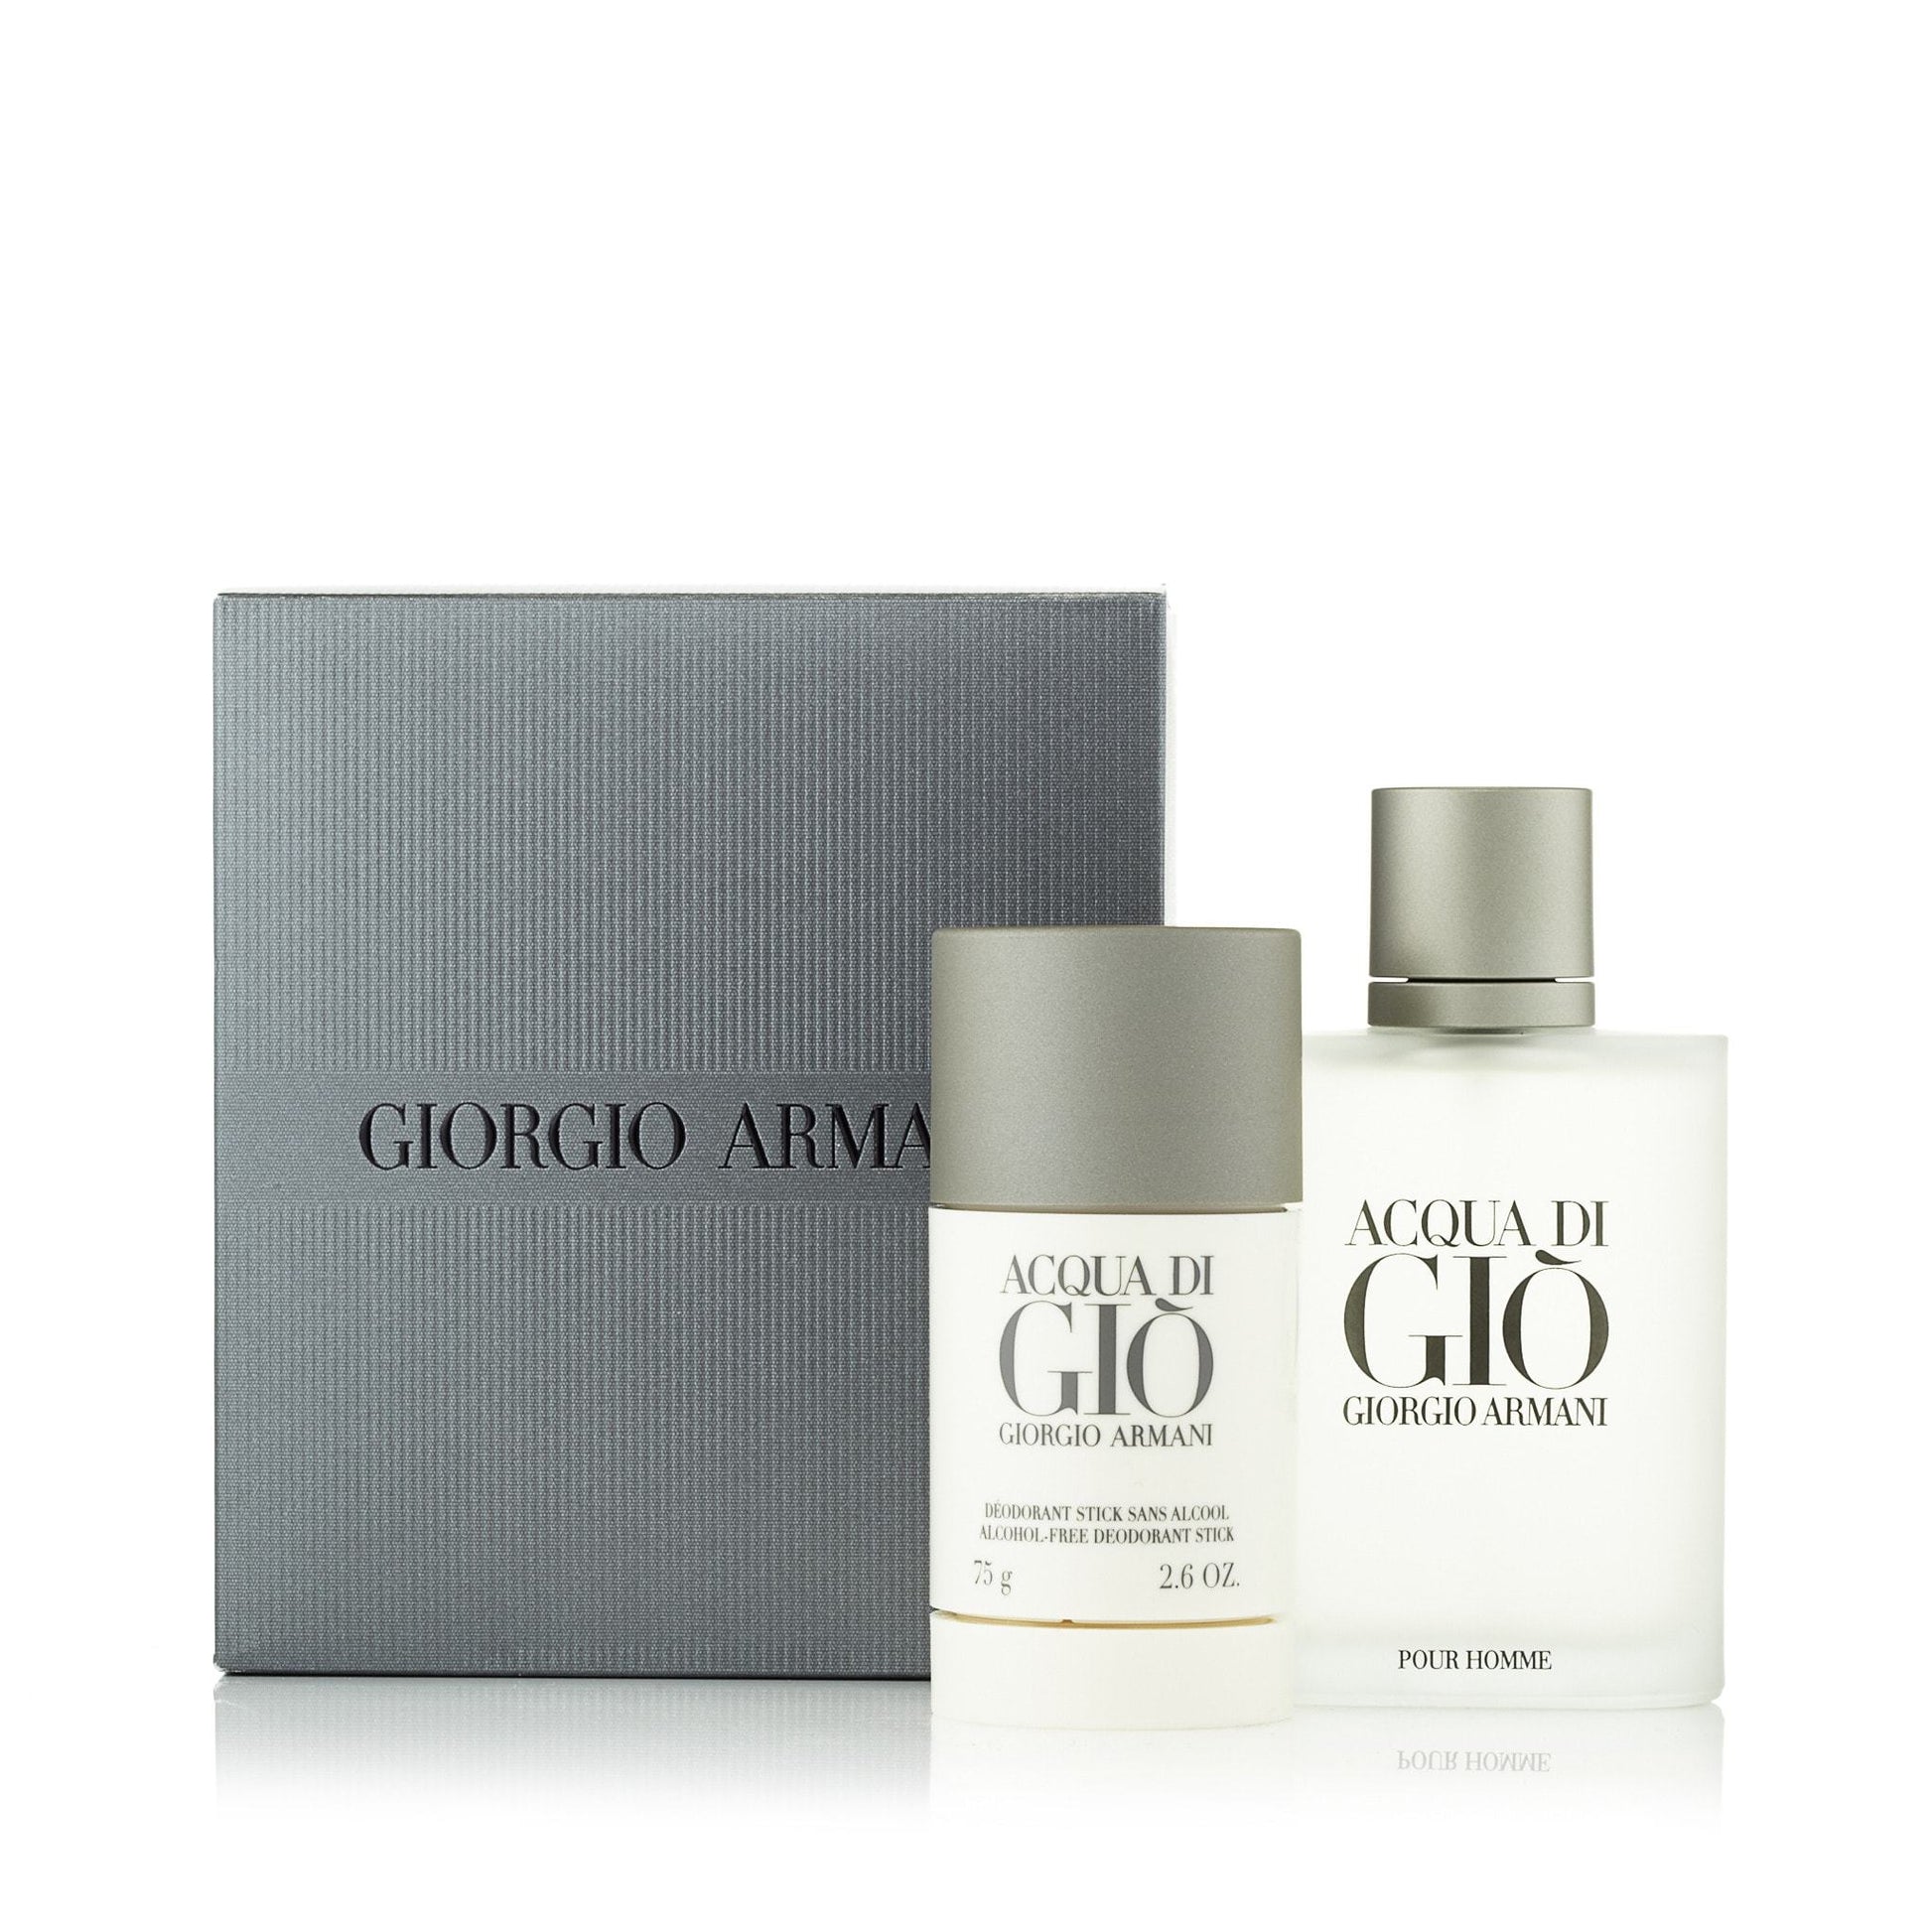 Acqua Di Gio Gift Set for Men by Giorgio Armani, Product image 2